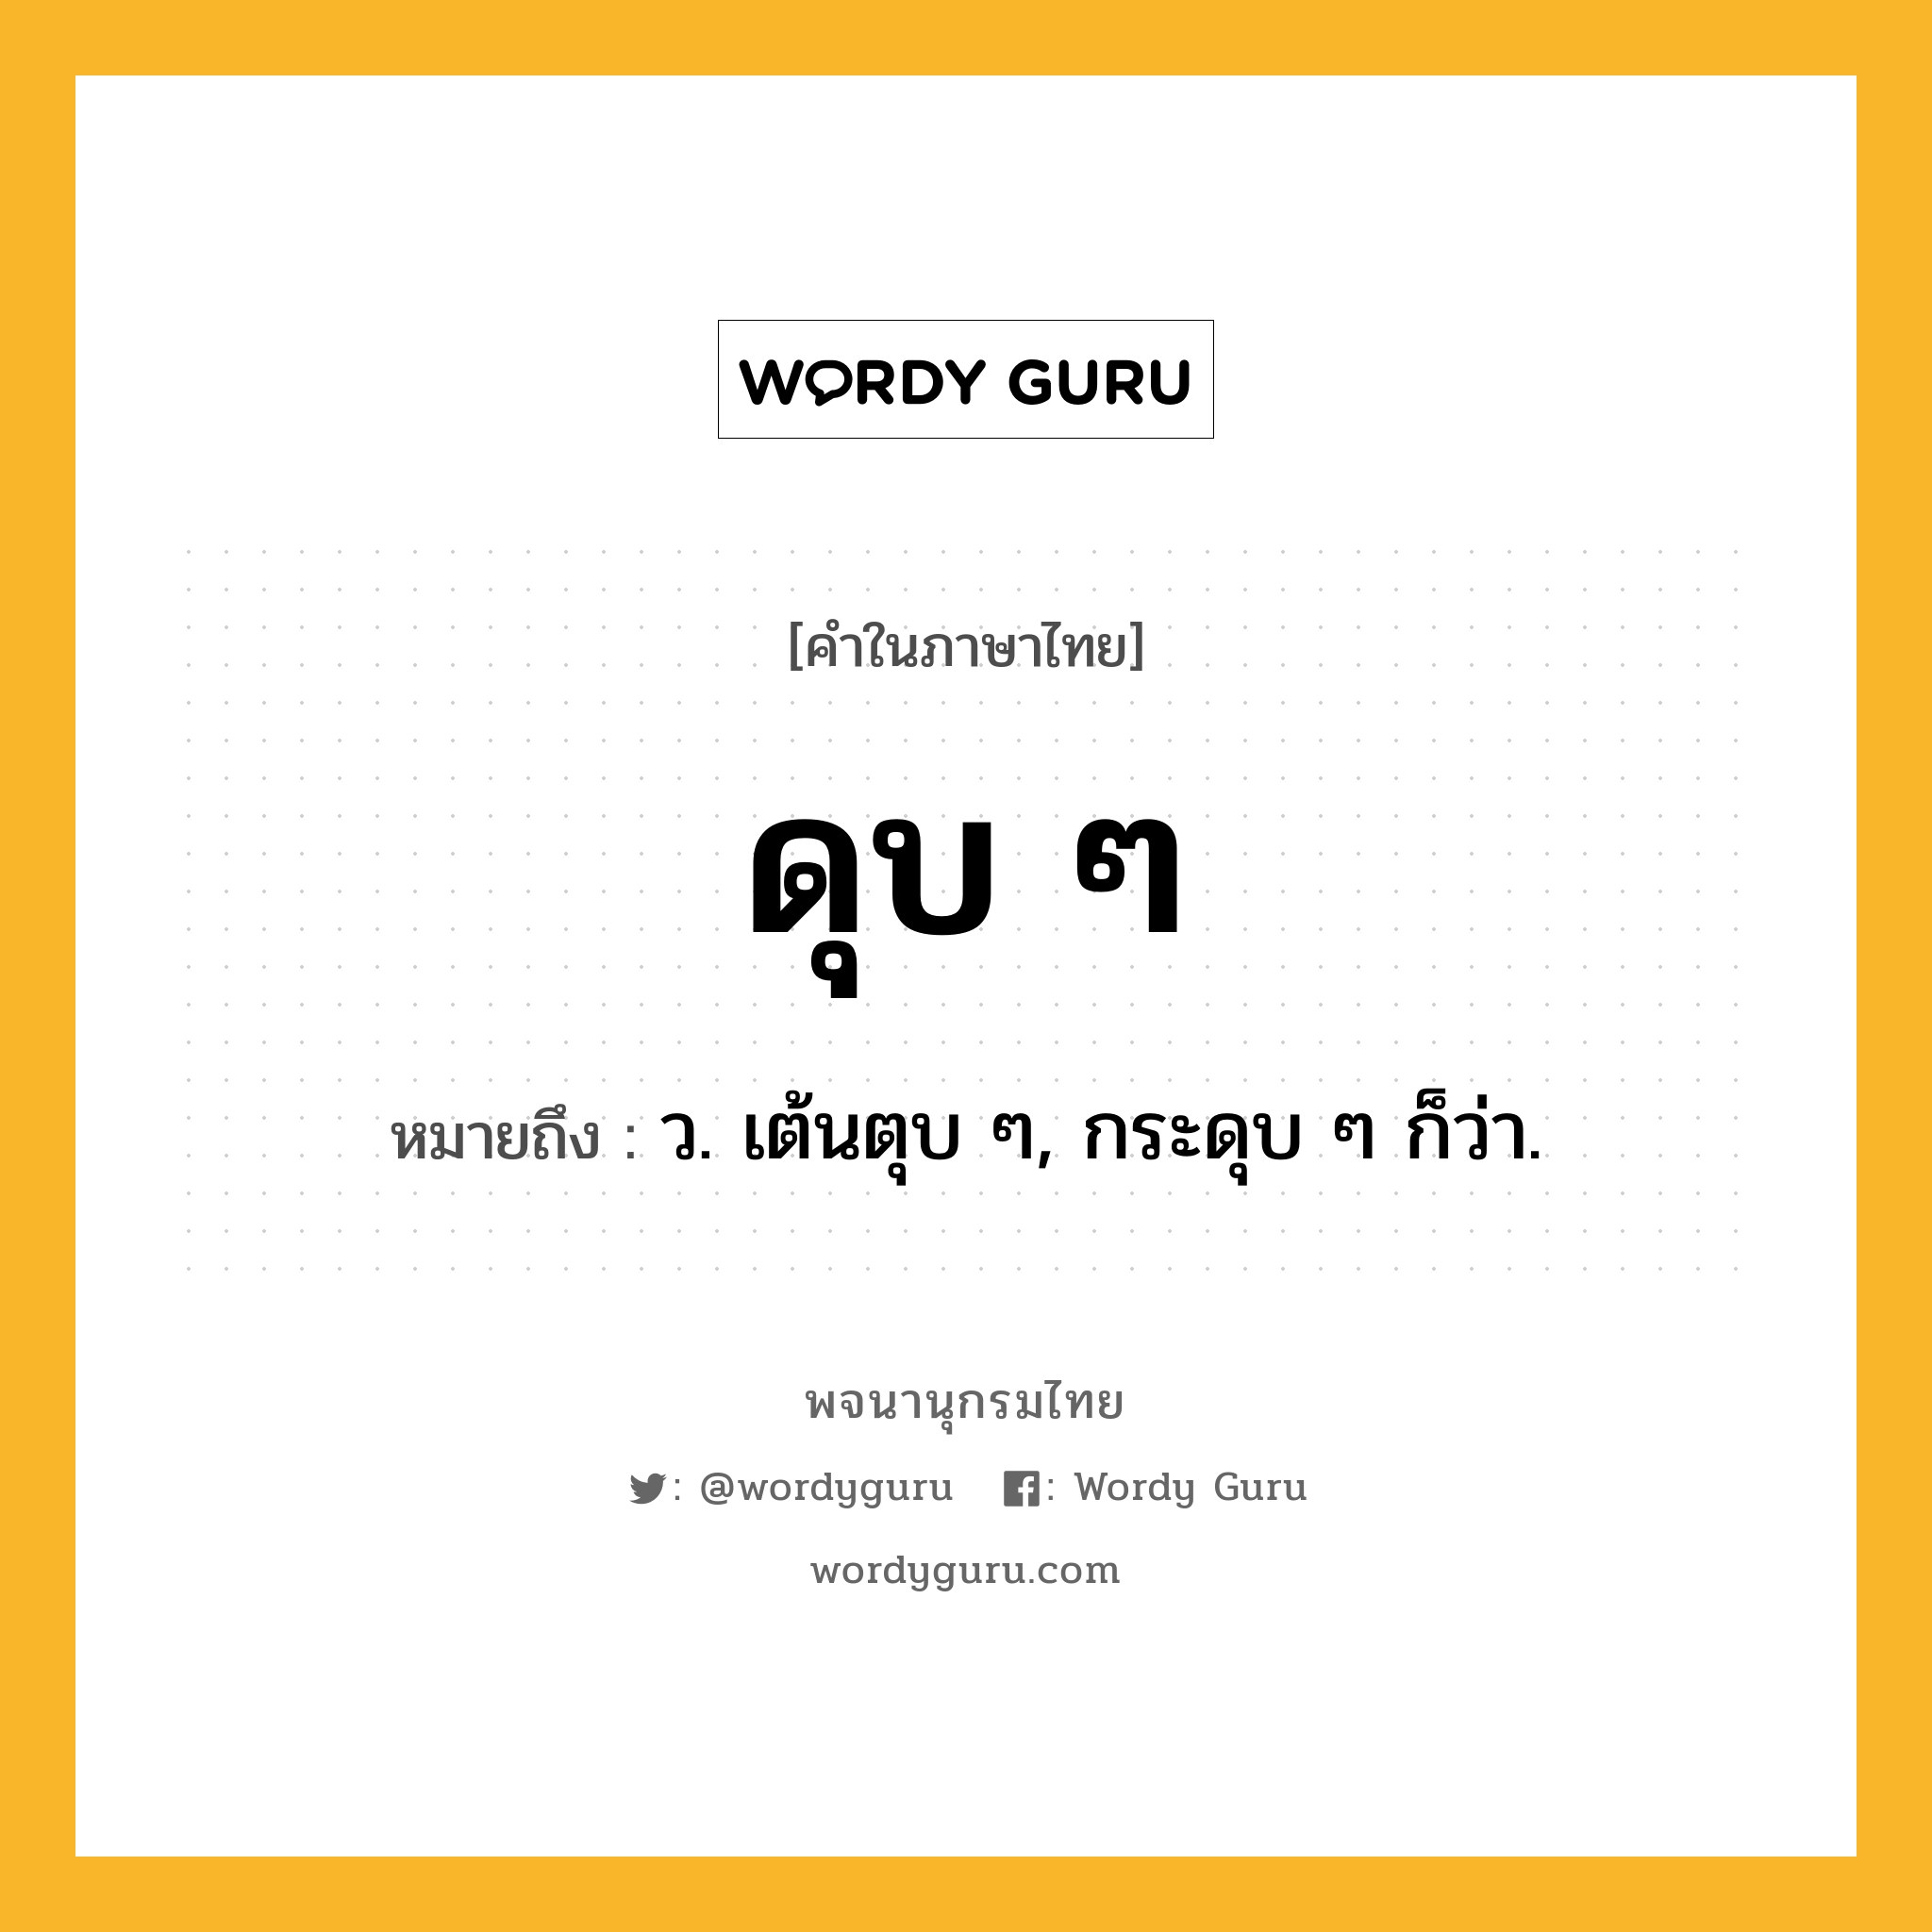 ดุบ ๆ ความหมาย หมายถึงอะไร?, คำในภาษาไทย ดุบ ๆ หมายถึง ว. เต้นตุบ ๆ, กระดุบ ๆ ก็ว่า.